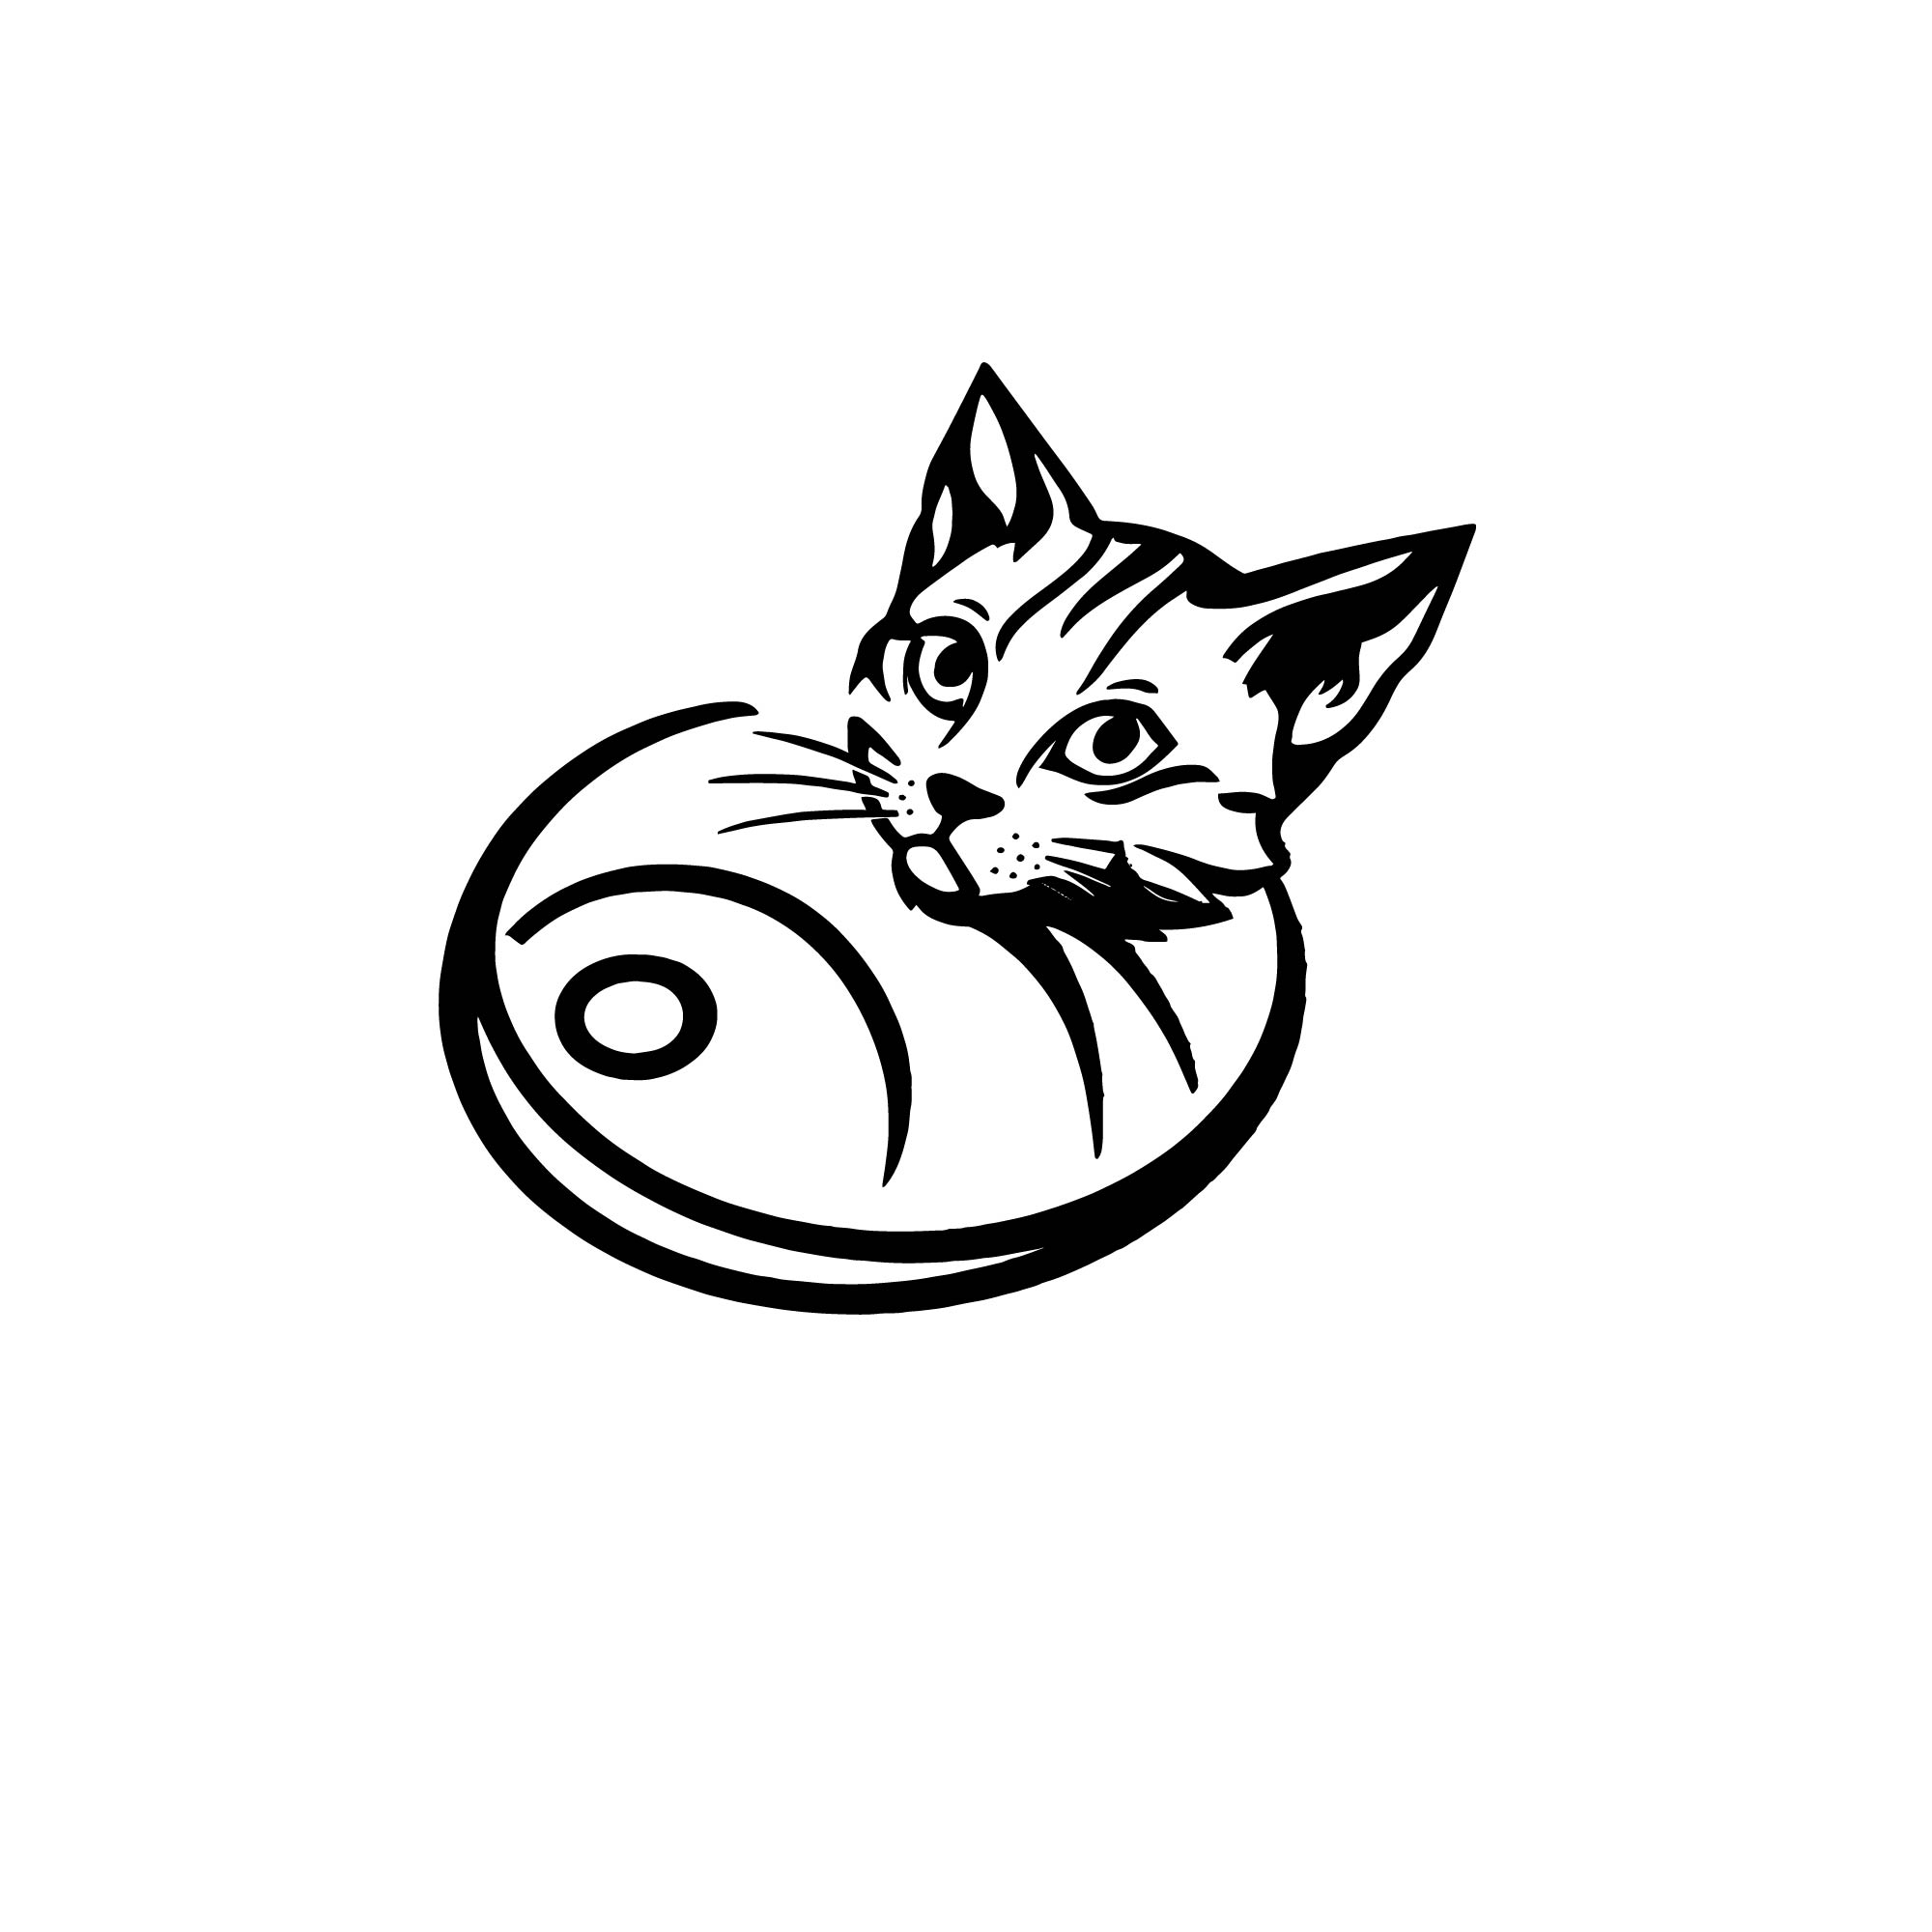 cat logo design 02 01 186